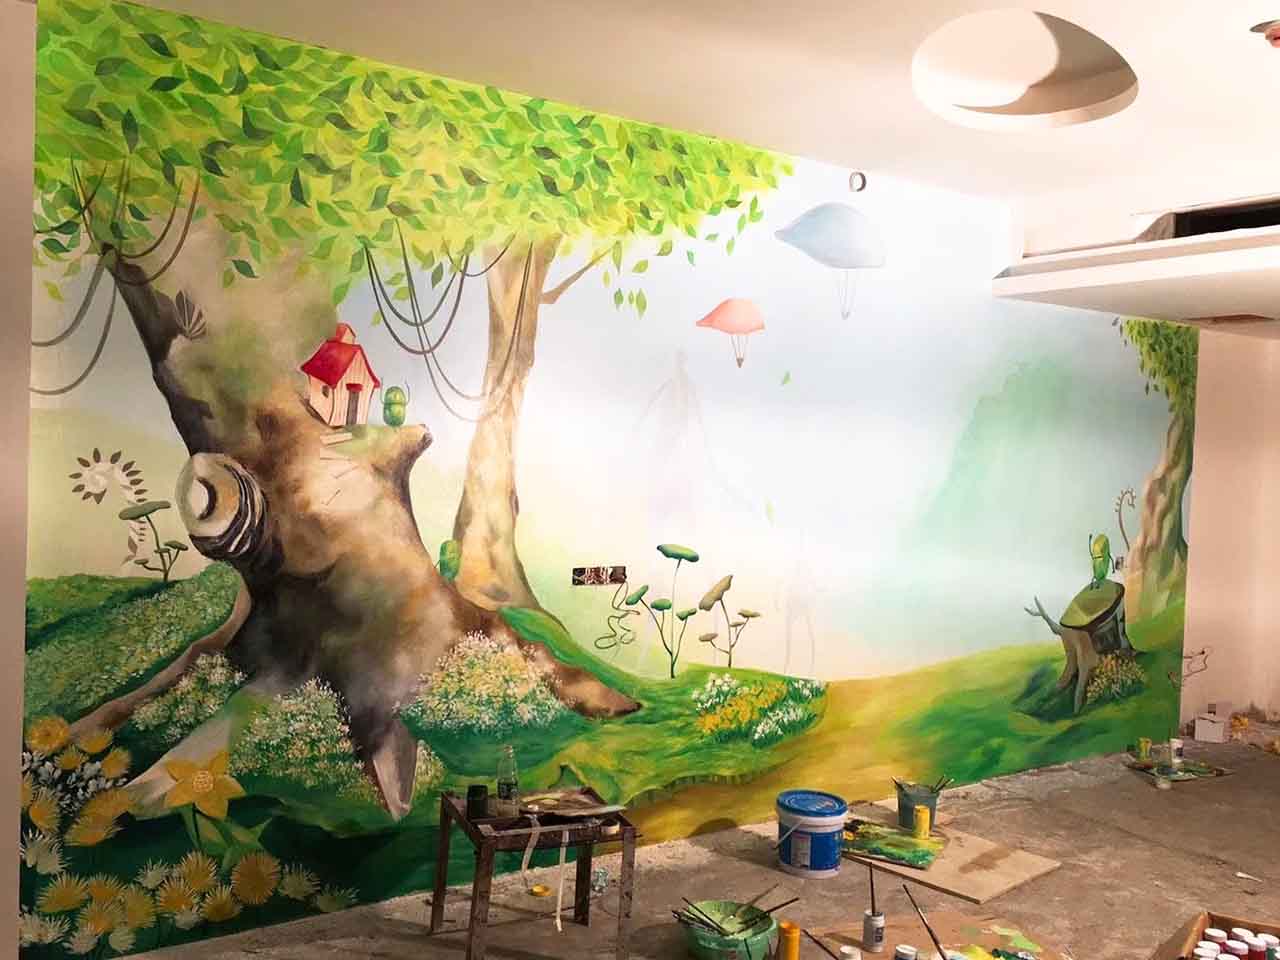 幼儿校园动物园游乐场卡通大树墙绘壁画彩绘涂鸦手绘成都澜泉文化